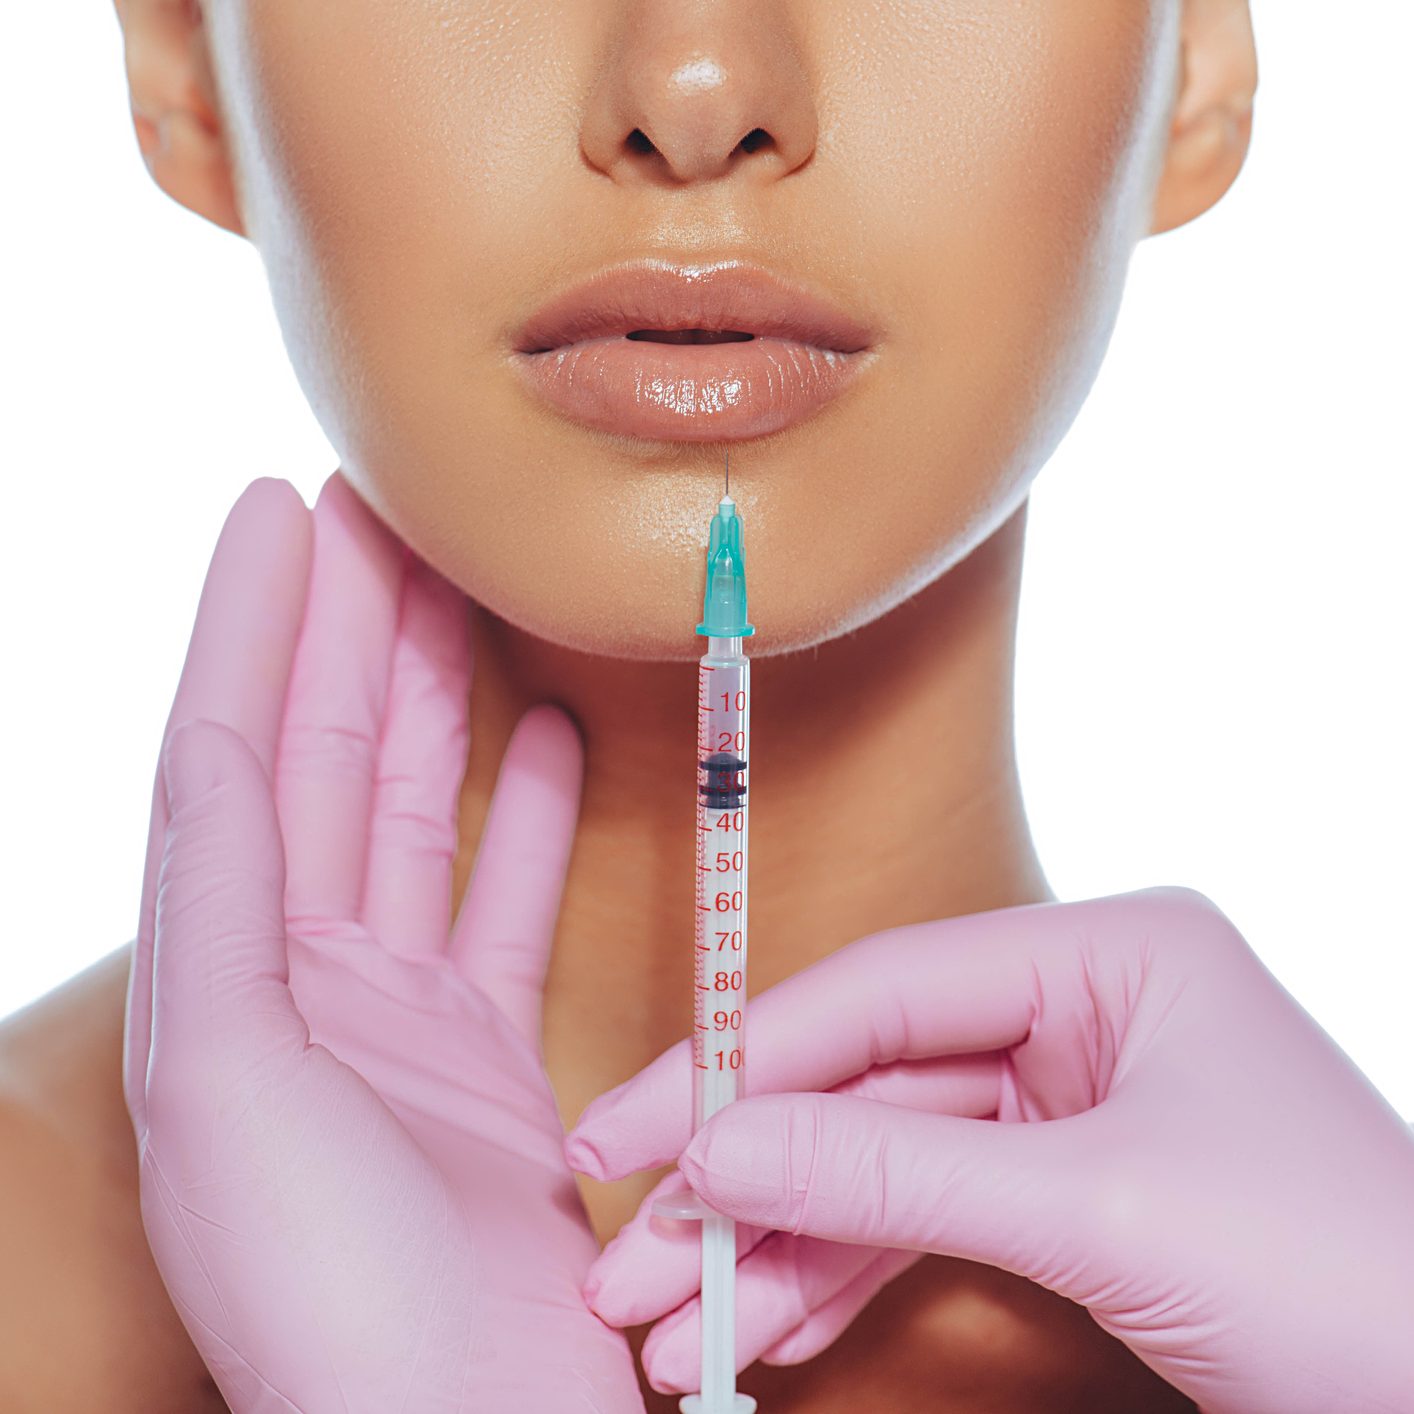 Et bilde av nedre del av en kvinnes ansikt. En filler-nål er holdt ved siden av leppen hennes av en lege med hansker. 